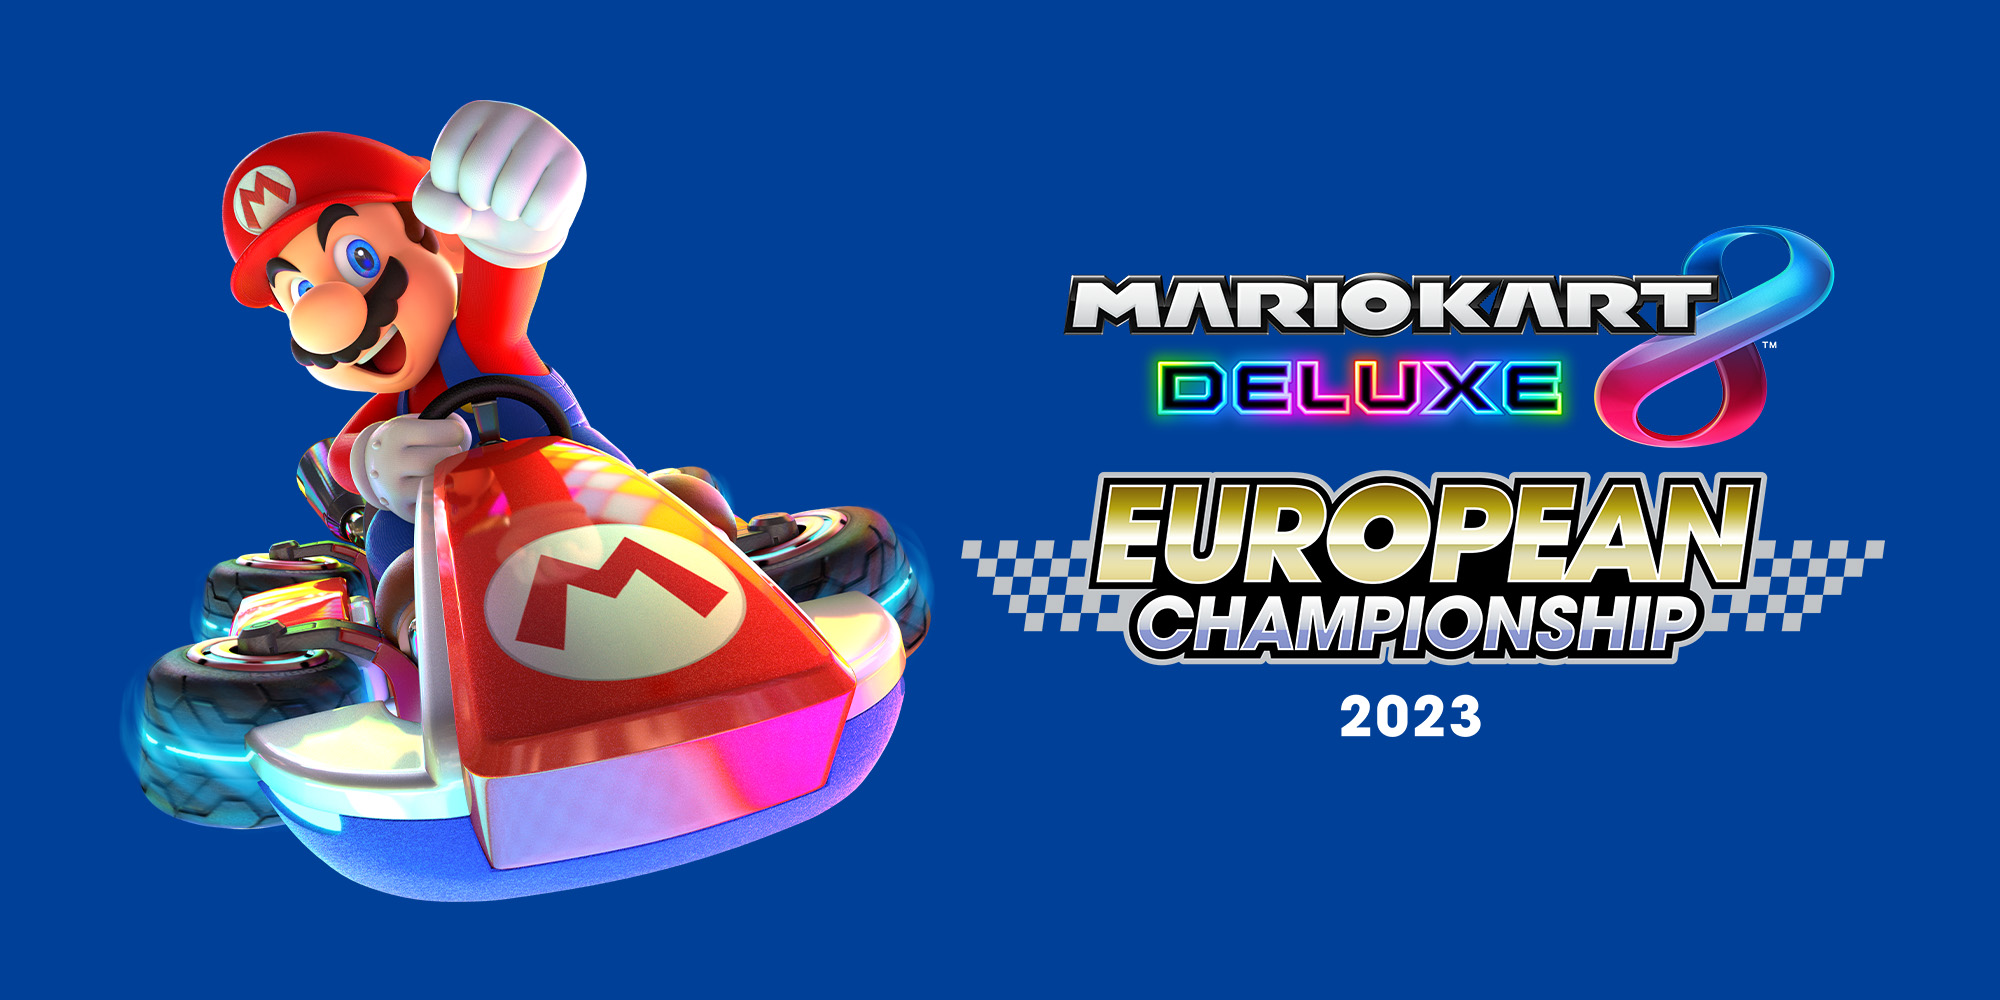 ¡Ya está aquí la Mario Kart 8 Deluxe European Championship 2023!